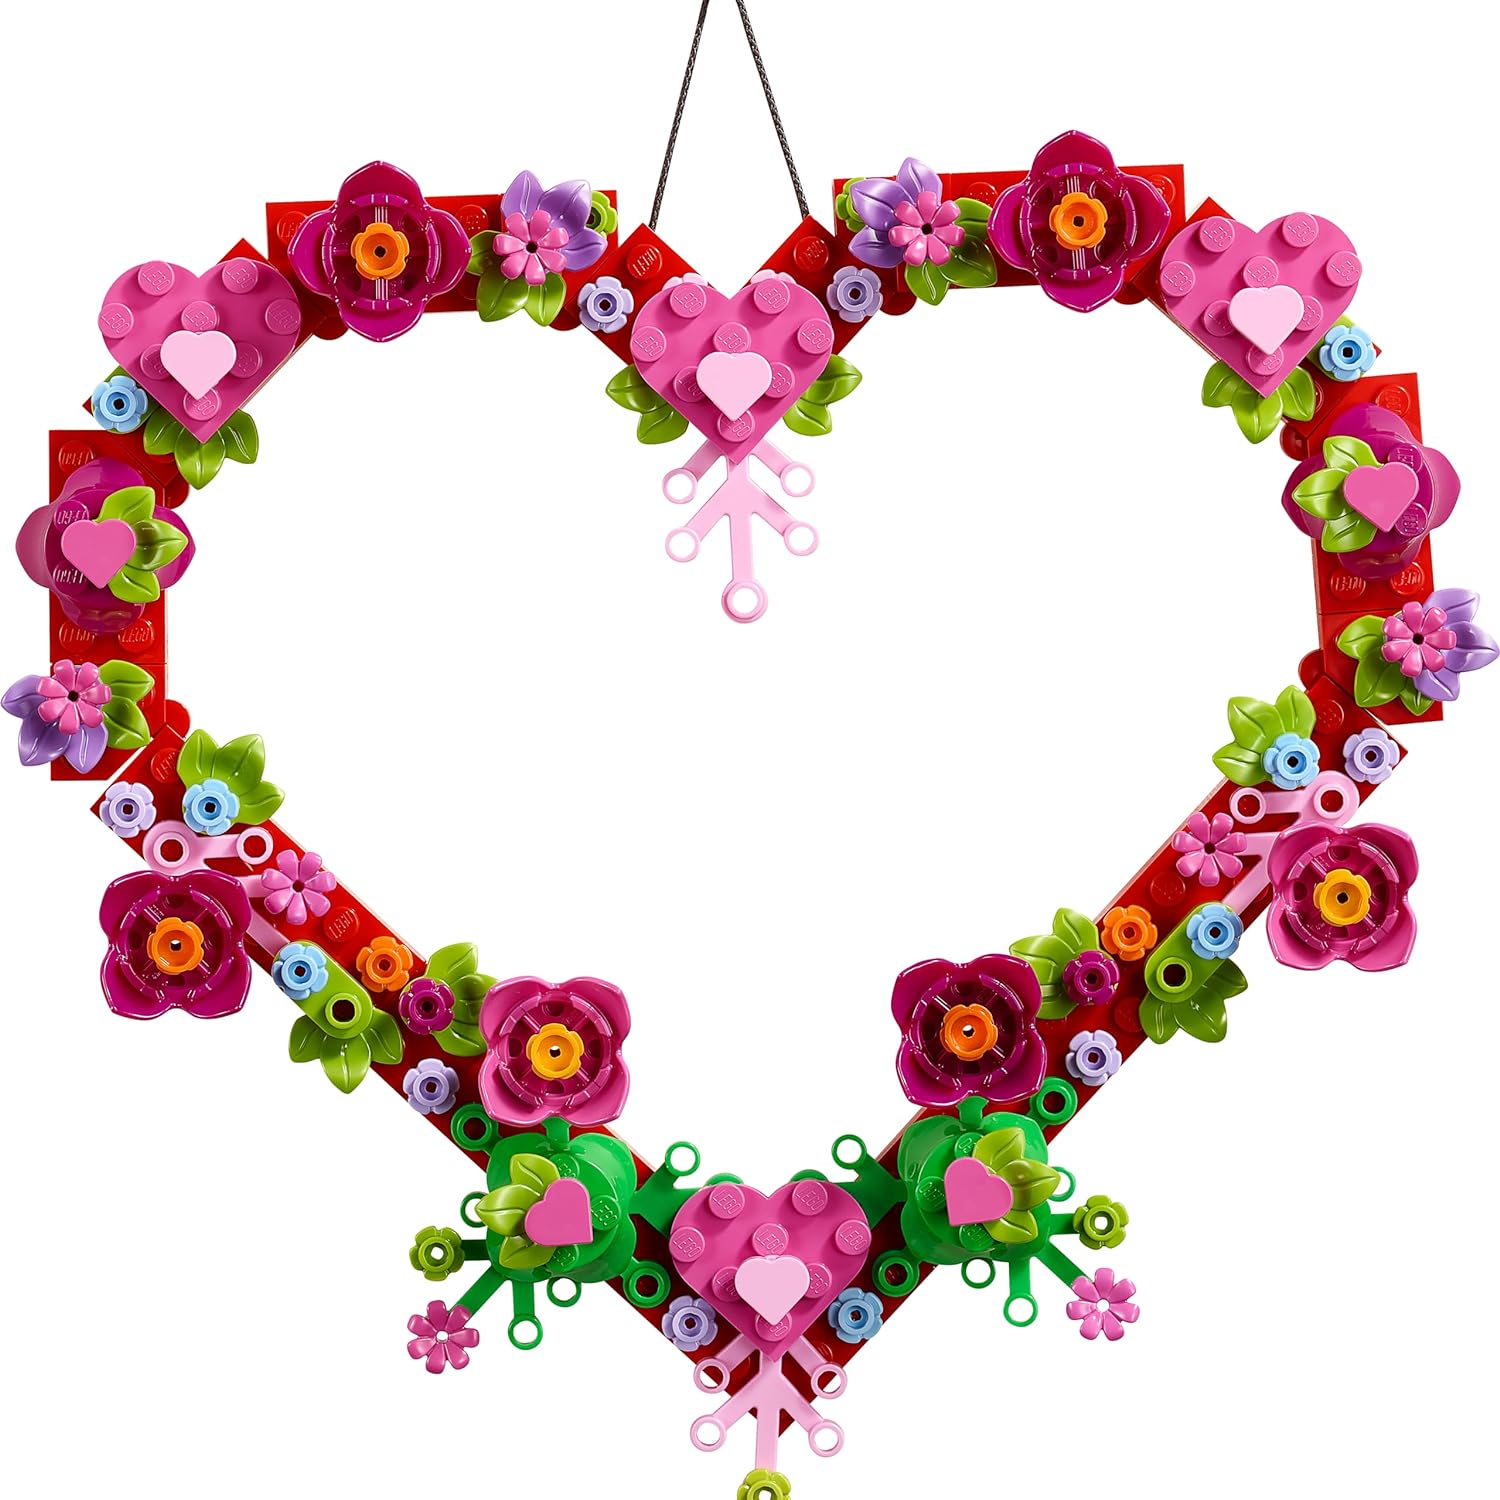 مجموعة ألعاب بناء زخرفة القلب من ليجو 40638، تشكيلة من الزهور الاصطناعية على شكل قلب، هدية رائعة لأحبائك، نشاط فني وحرف فريد للأطفال.